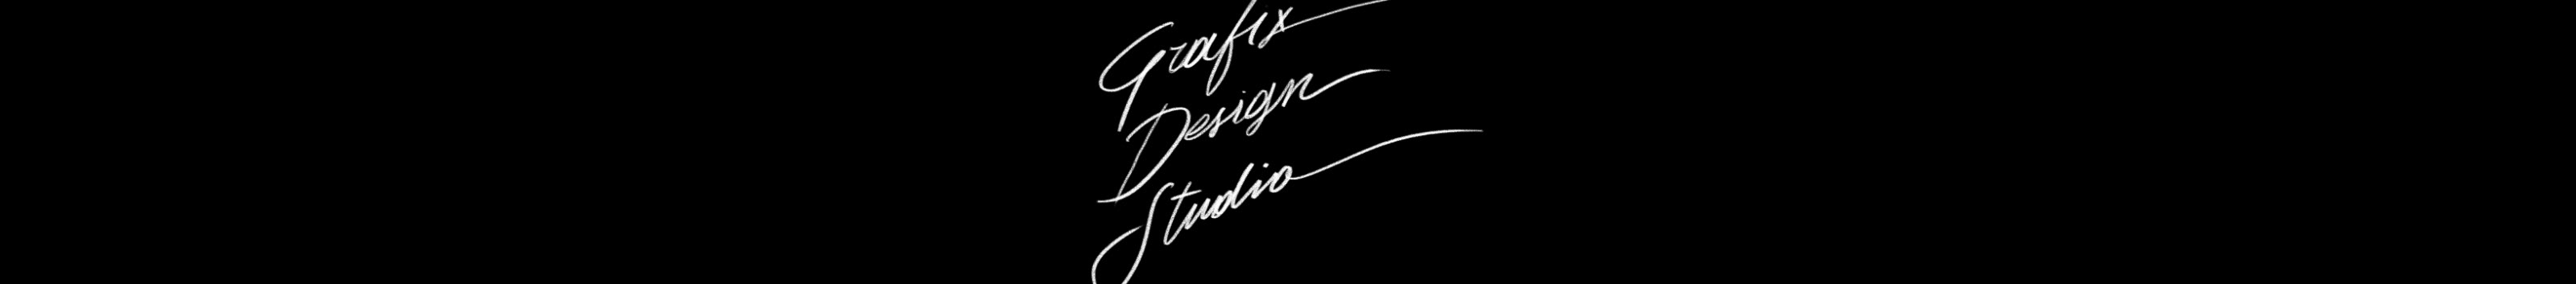 Grafix Design Studio's profile banner